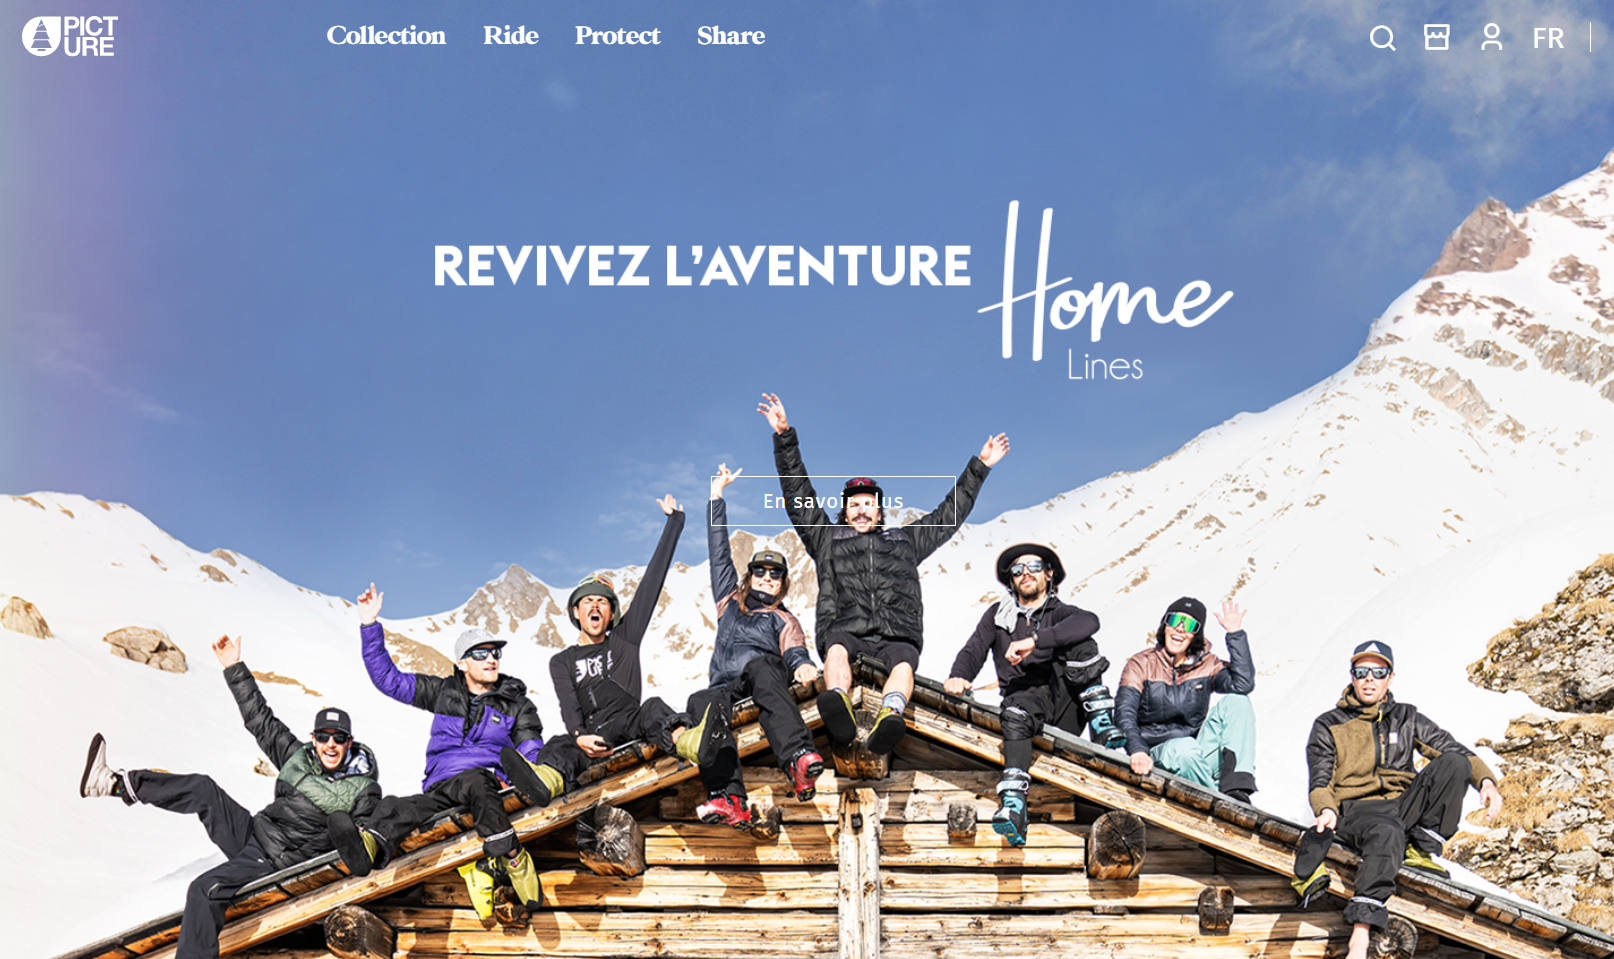 法国滑雪服饰品牌 Picture 推出产品租赁服务